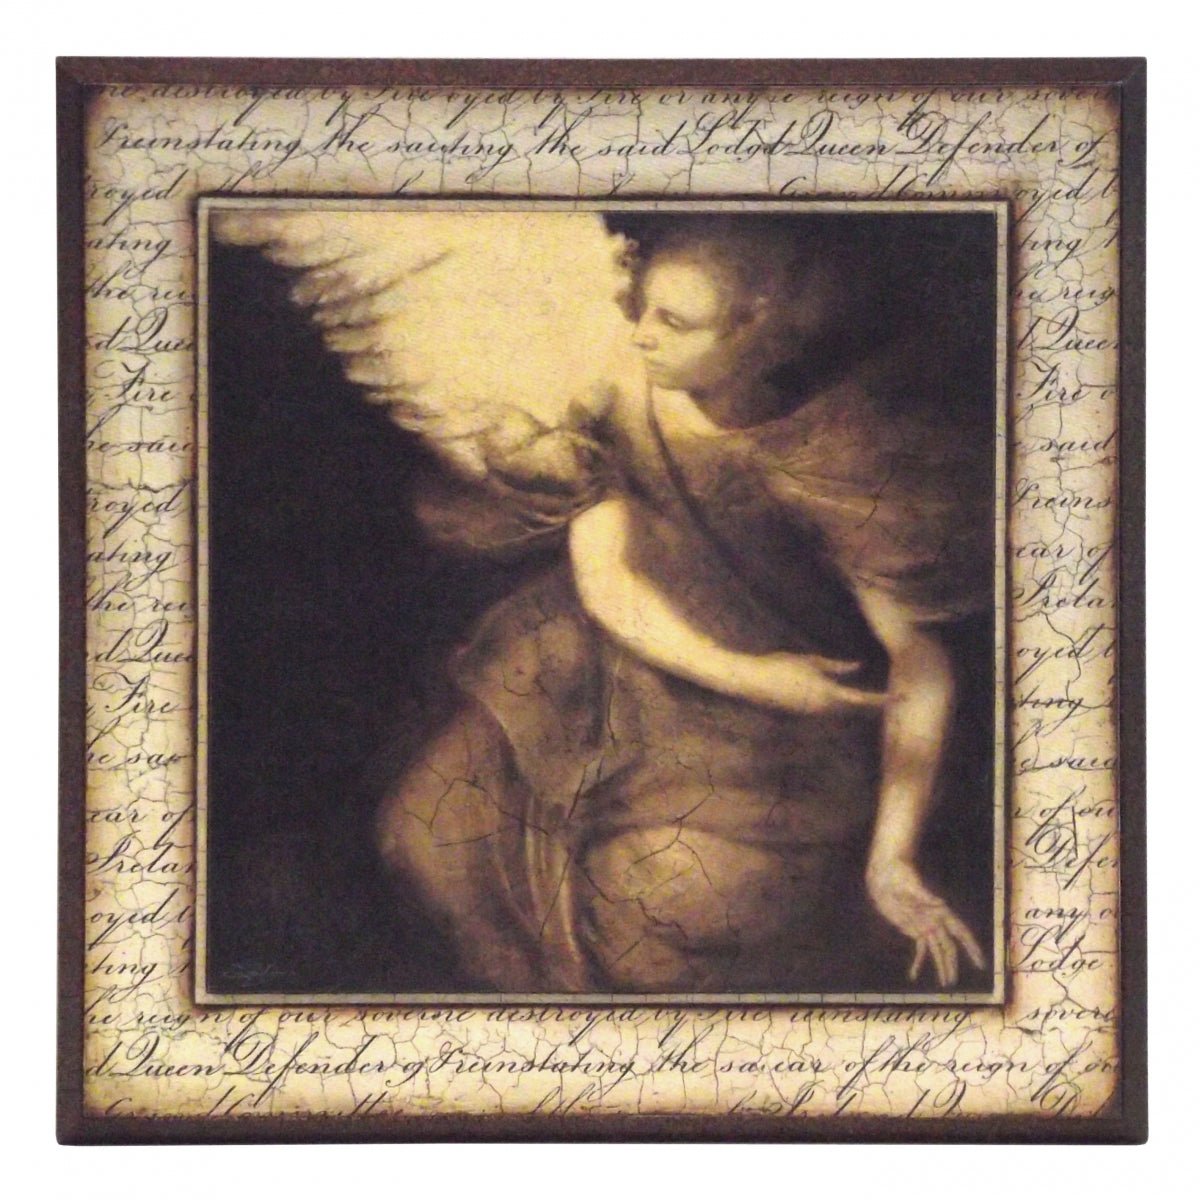 Obraz - Antyk, anioł, fragment fresku - reprodukcja na płycie A0931 33x33 cm - Obrazy Reprodukcje Ramy | ergopaul.pl